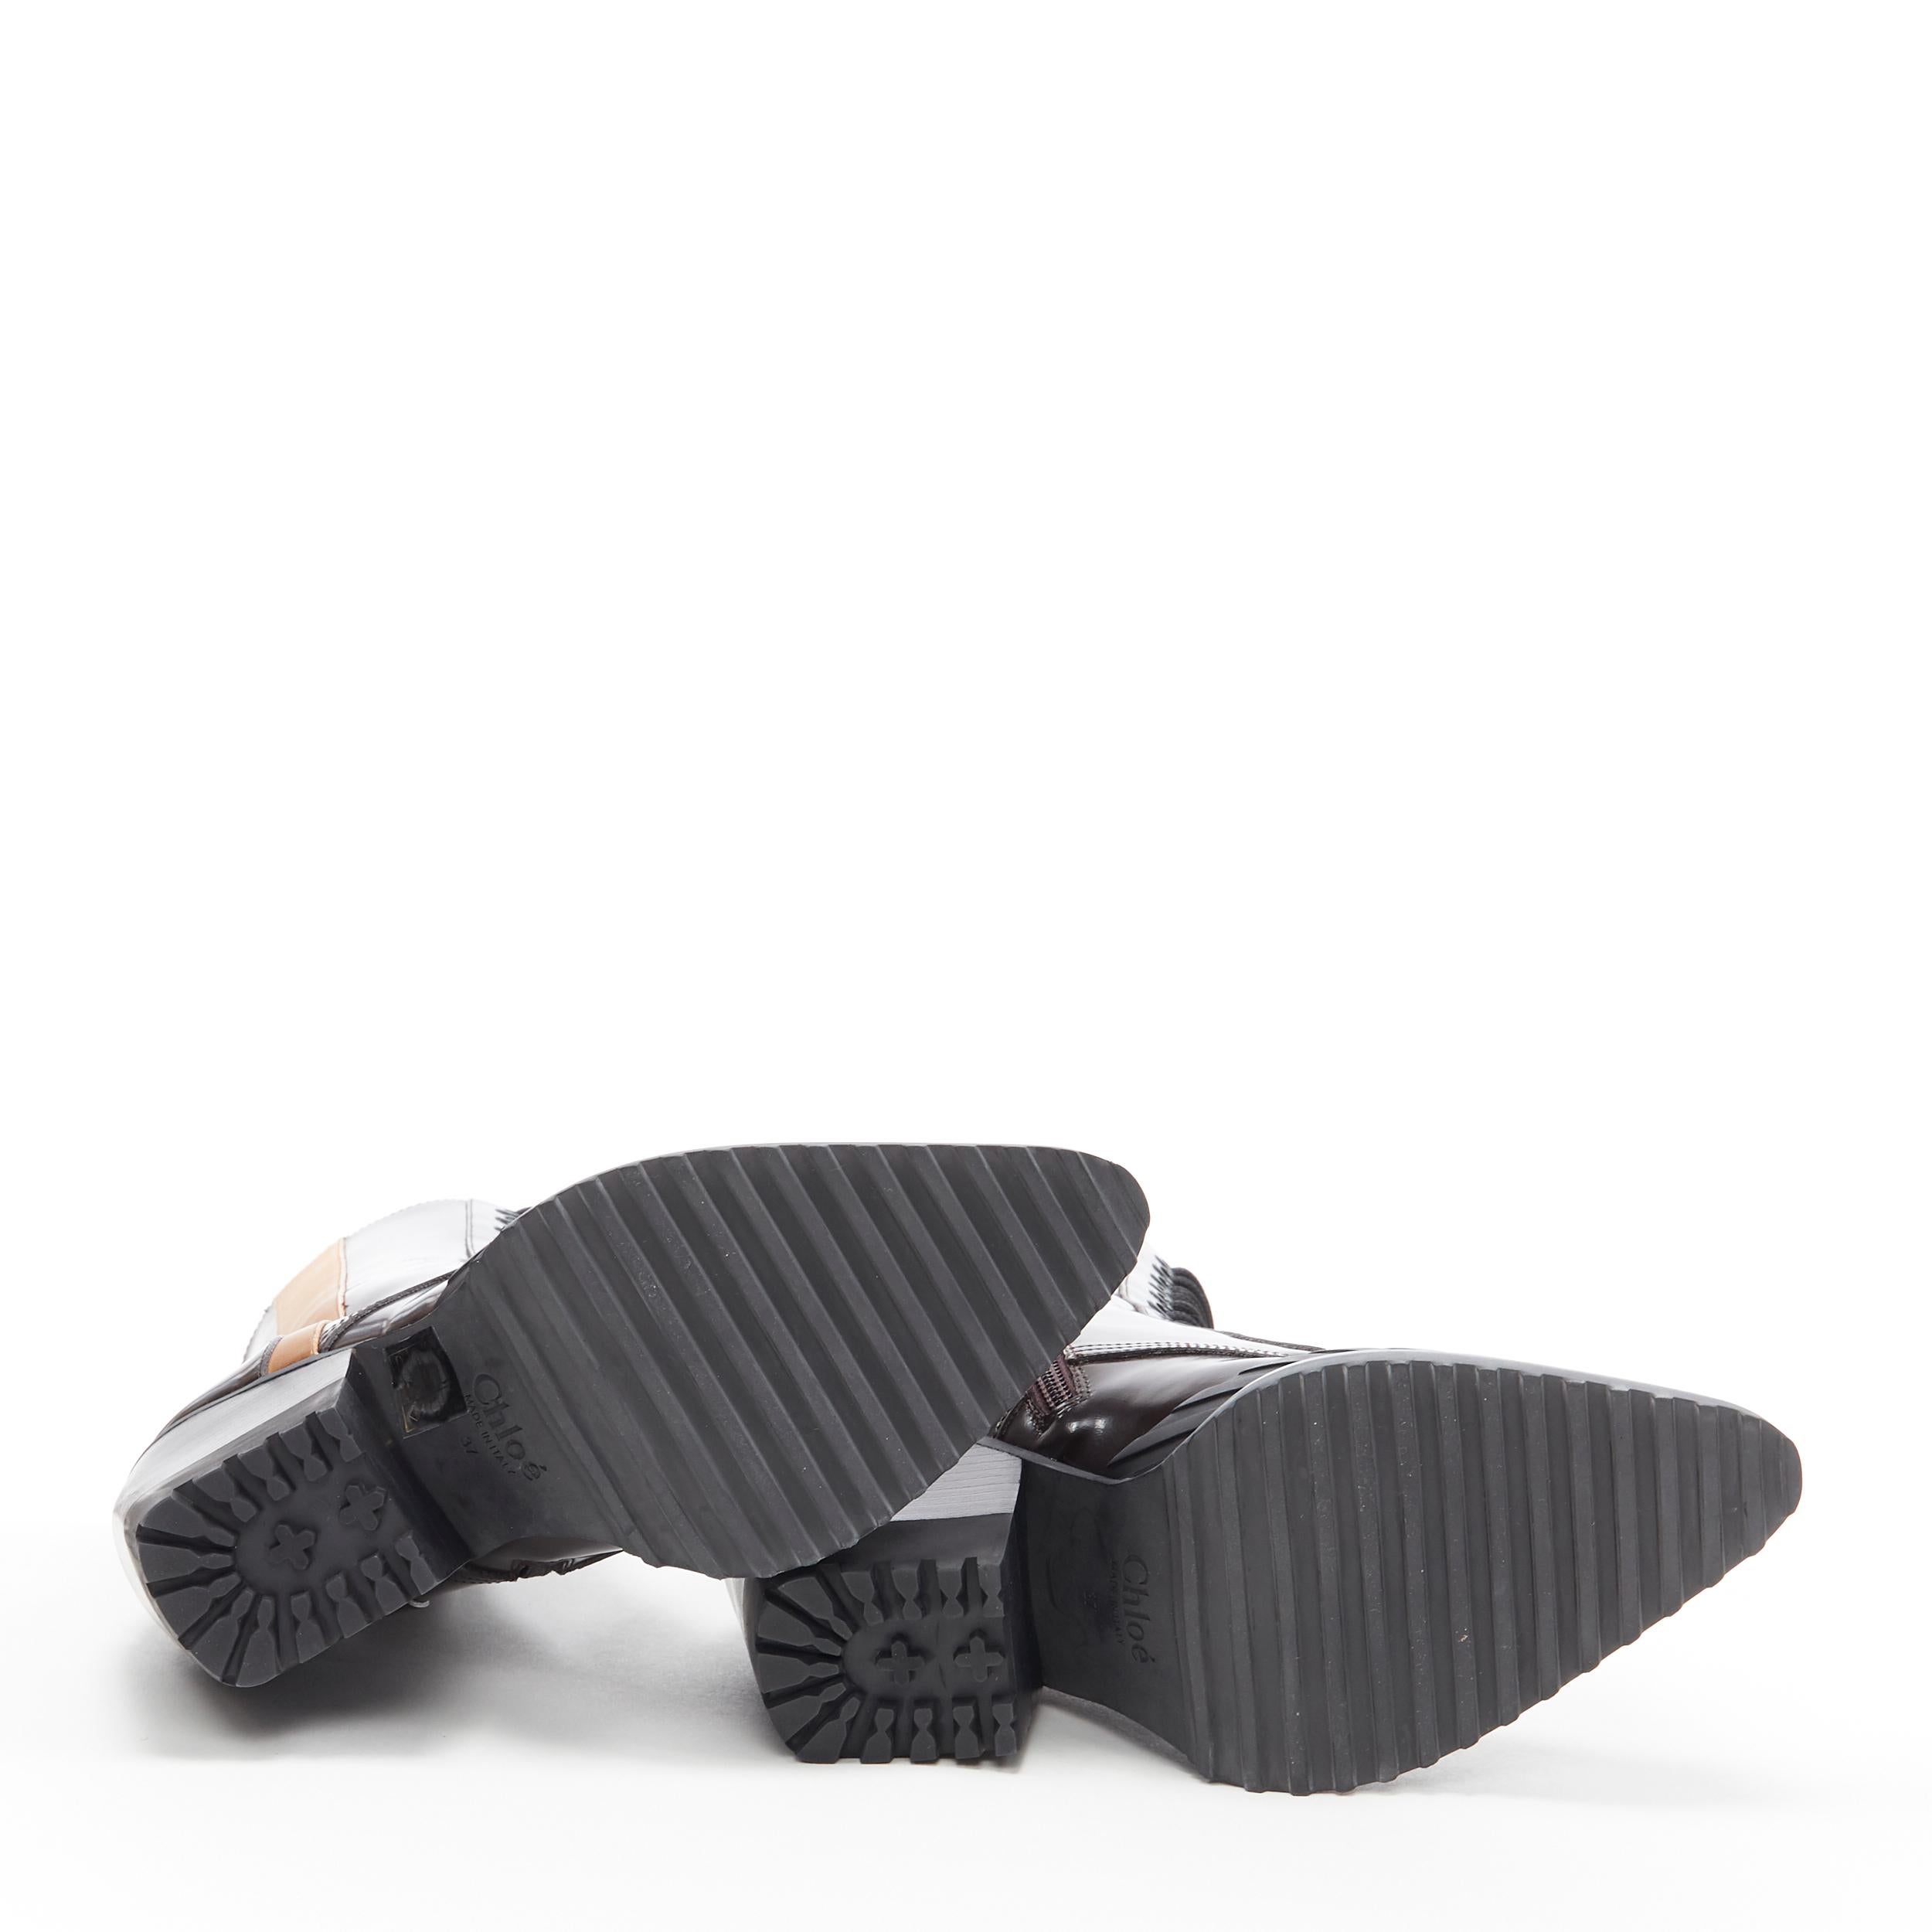 Black new CHLOE Runway Rylee brown glossy leather block heel heel rubber boot EU38.5